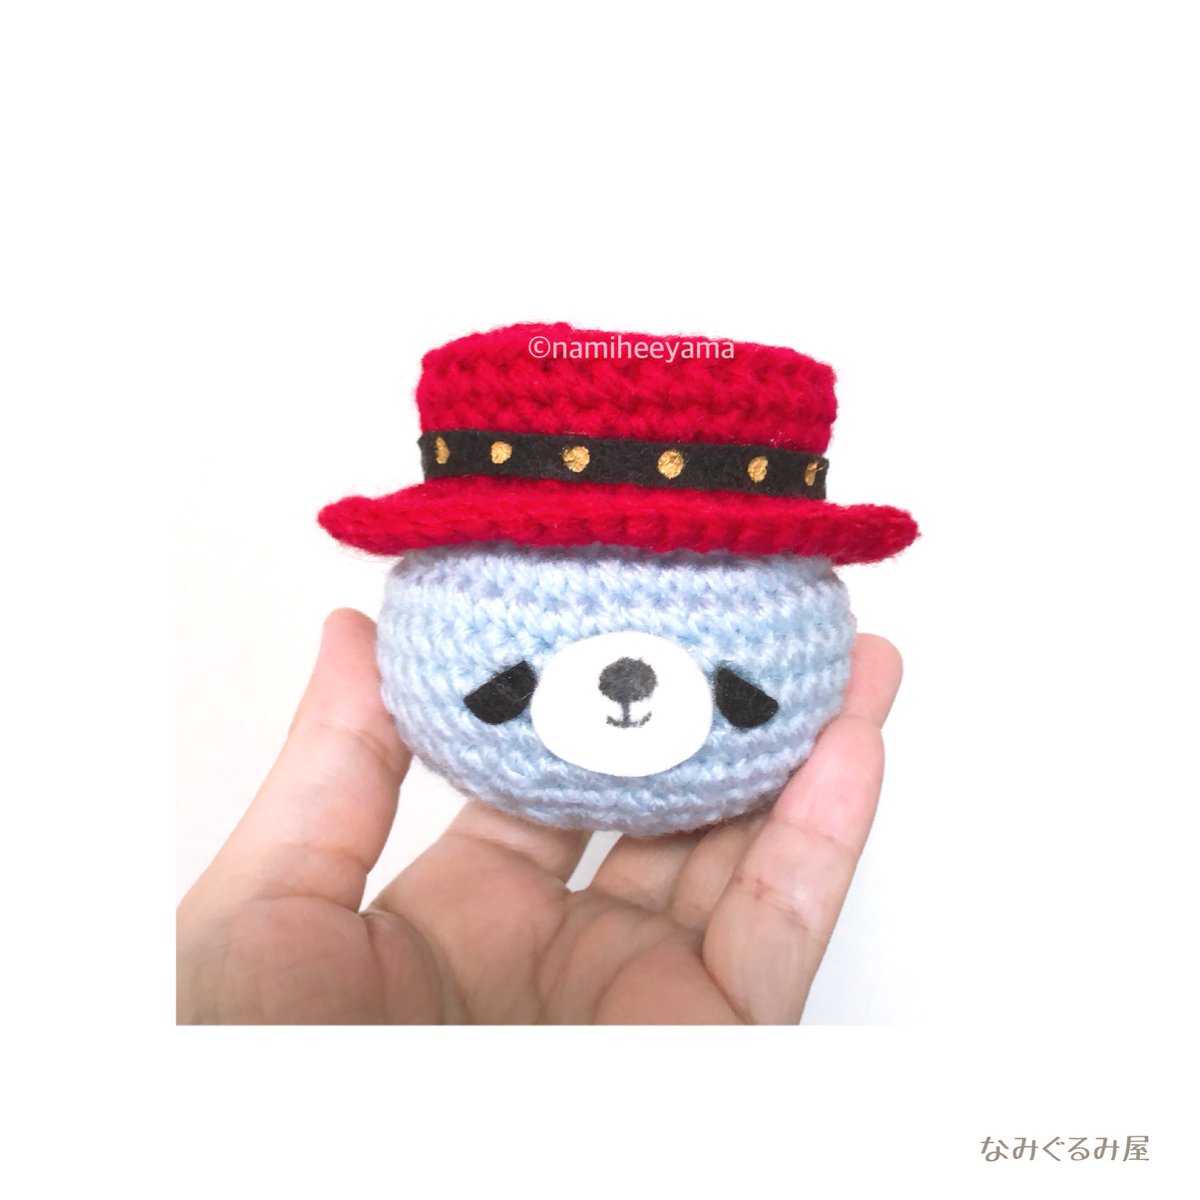 なみぐるみ屋 Baebaeべべたん顔だけver Bigbang Handmade Amigurumi Taeyang Crochet なみぐるみ